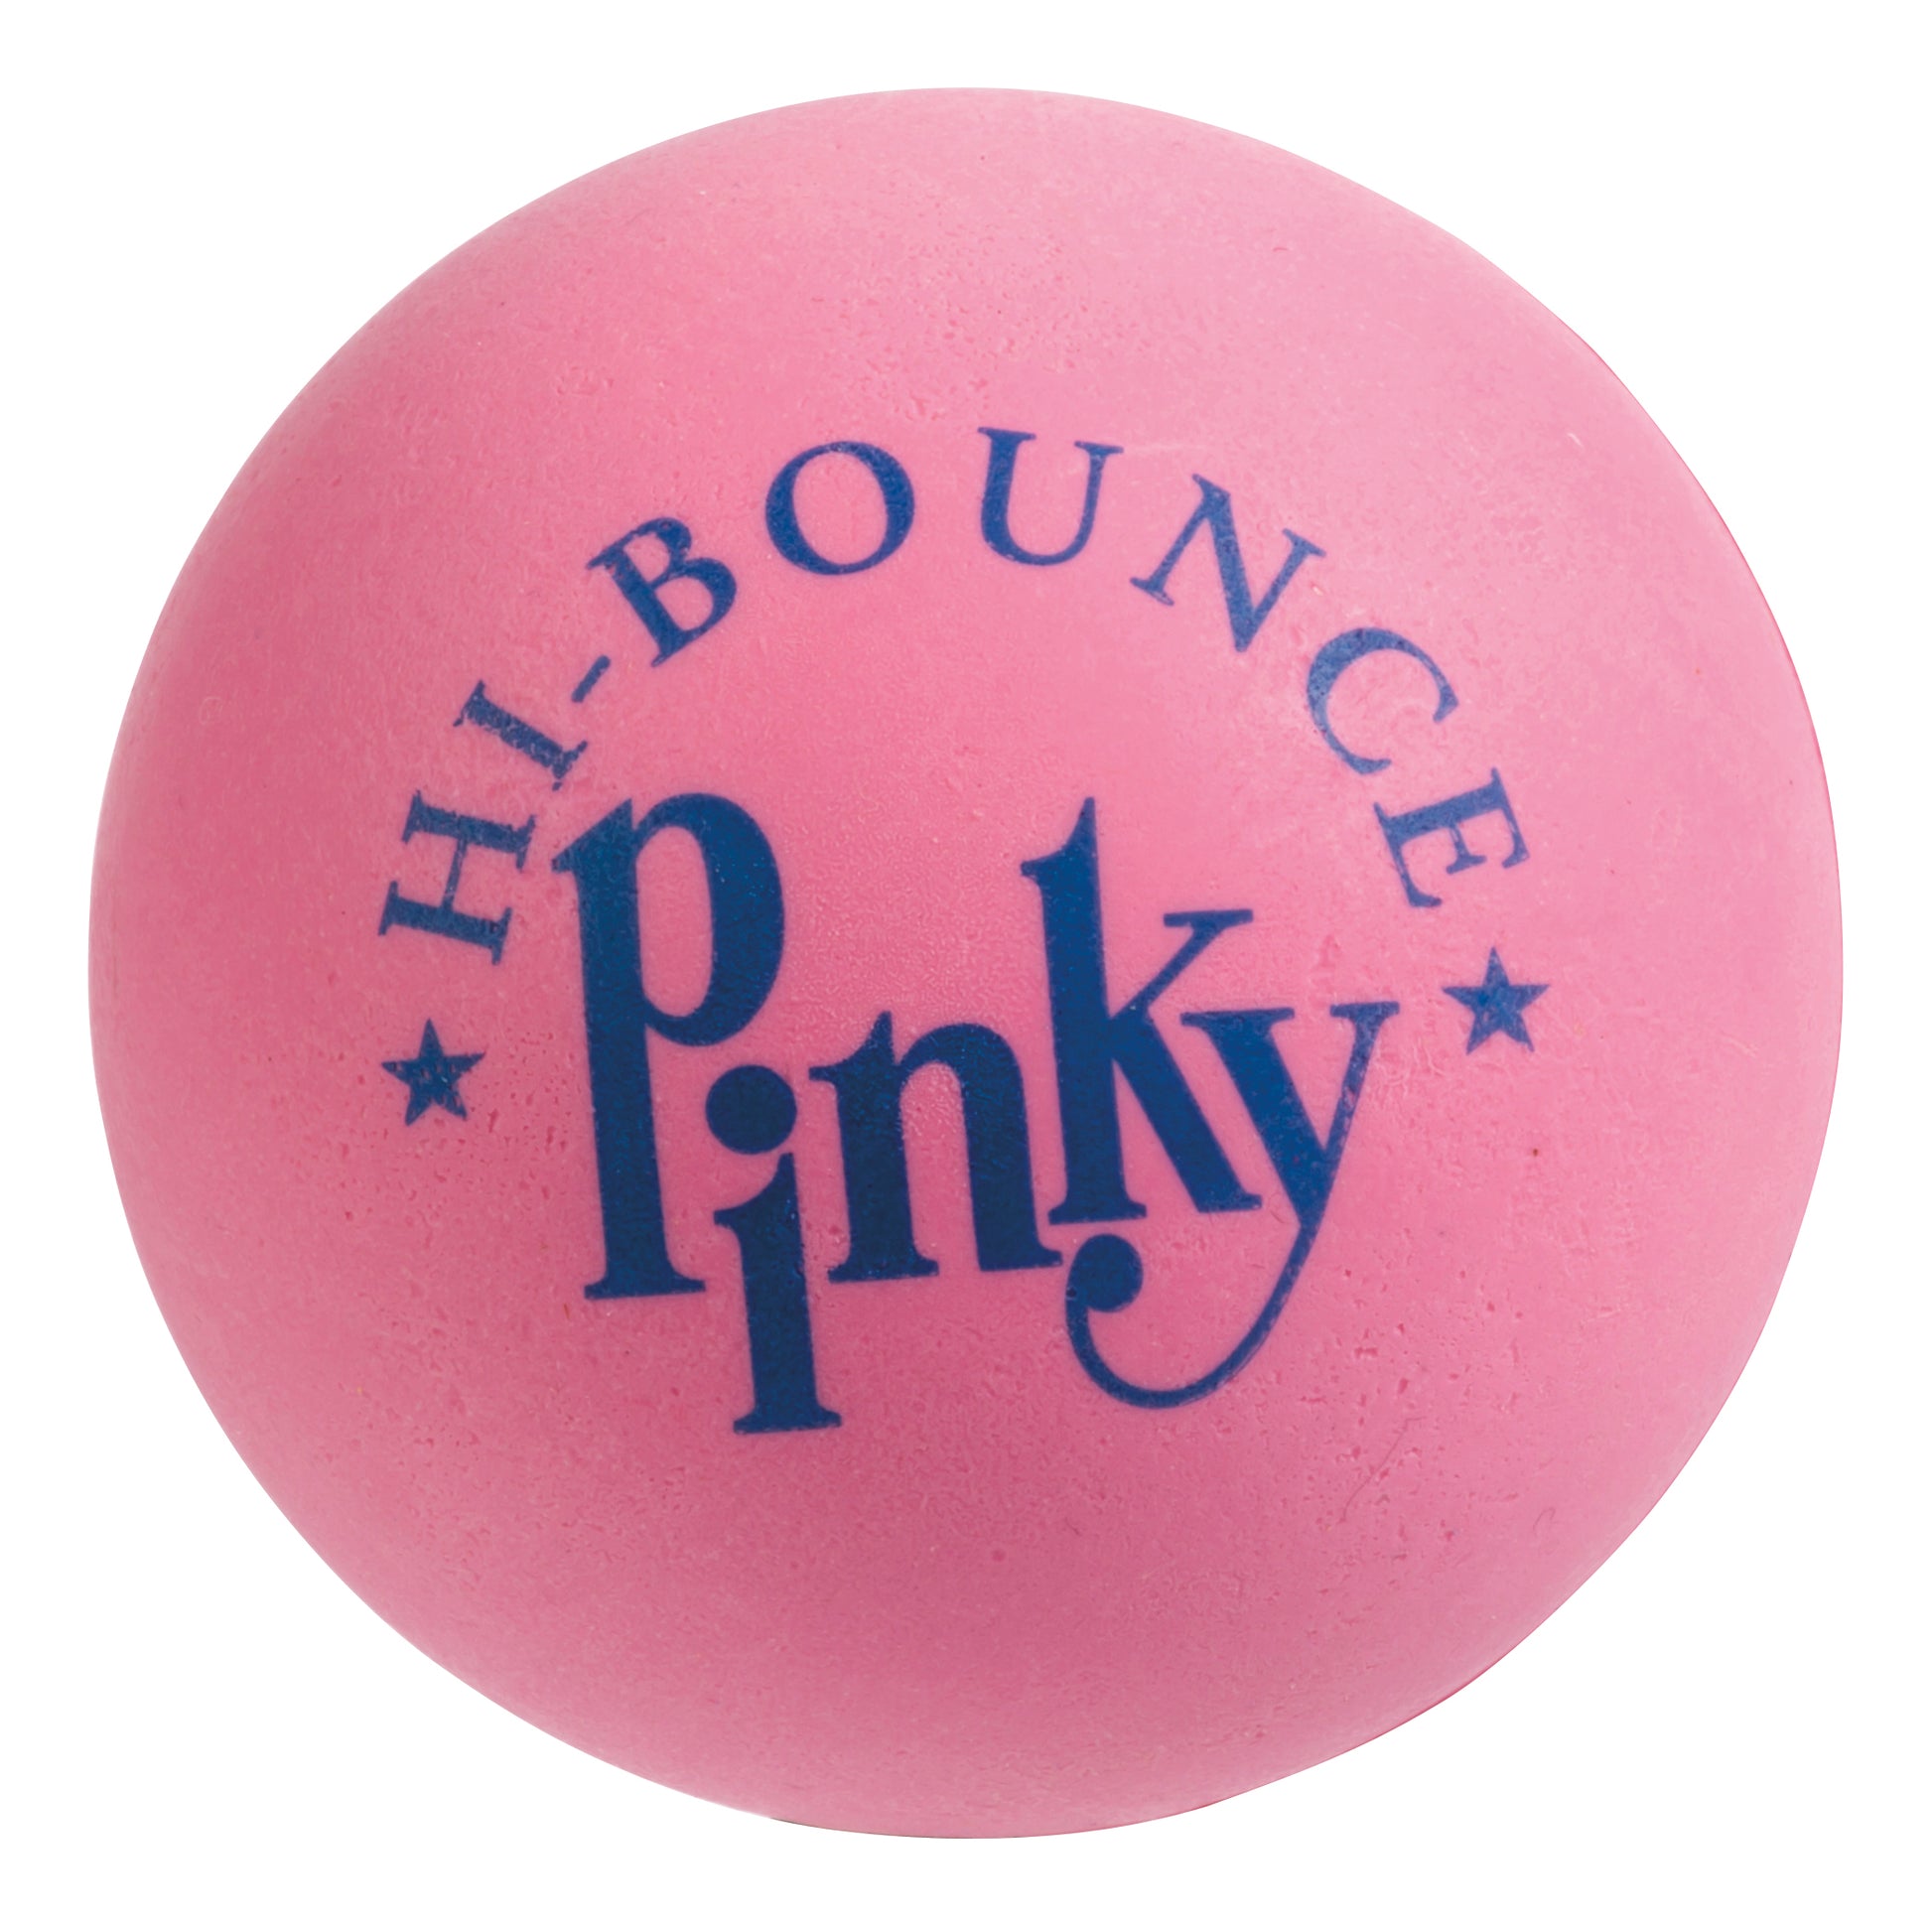 Playground Classics Pinky Ball